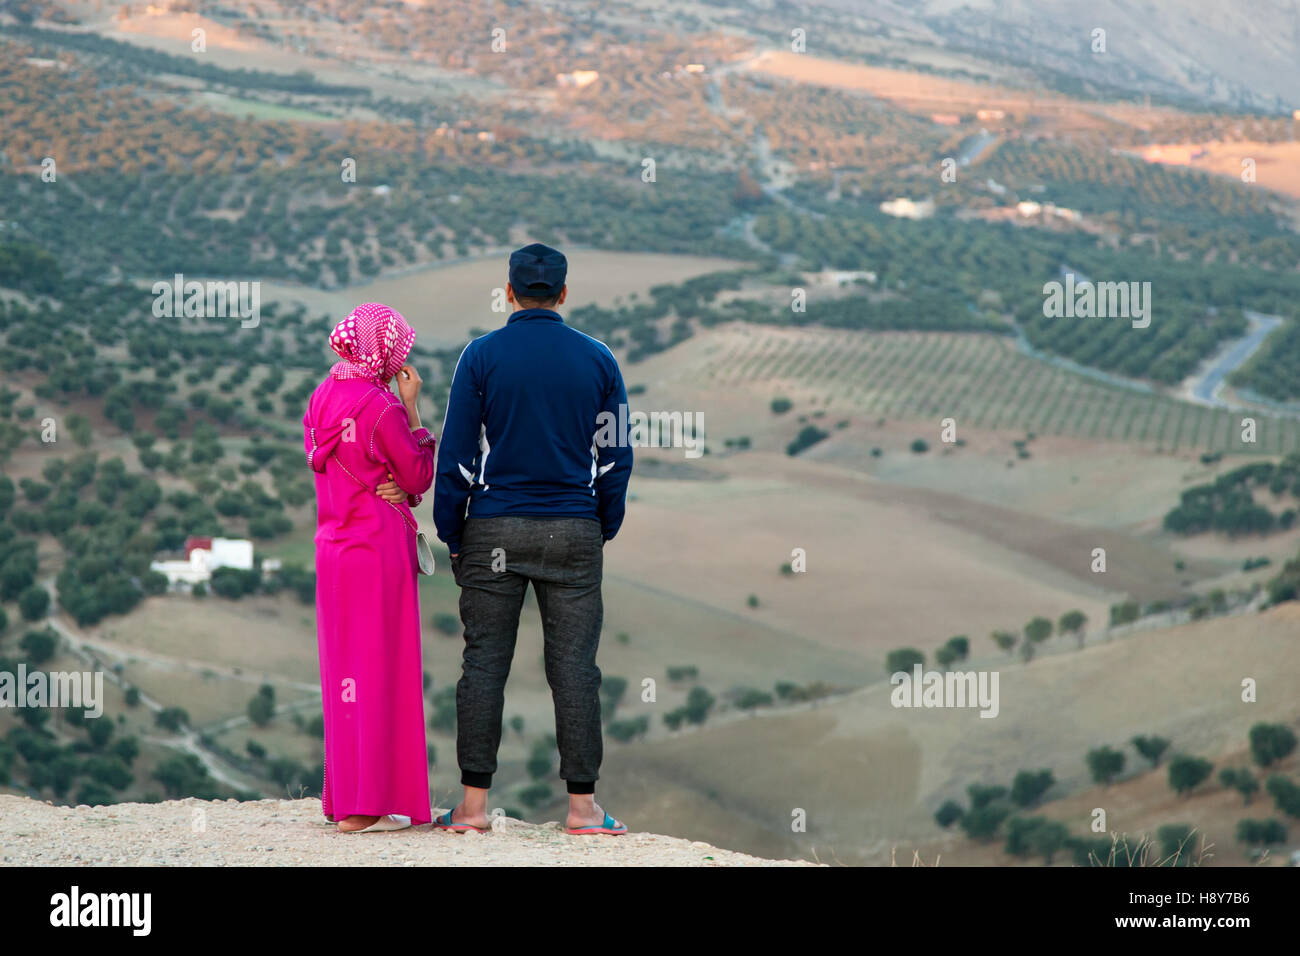 Giovani Musulmani giovane su una collina nei pressi di Fès, affacciato sul panorama del paesaggio con alberi di olivo Foto Stock